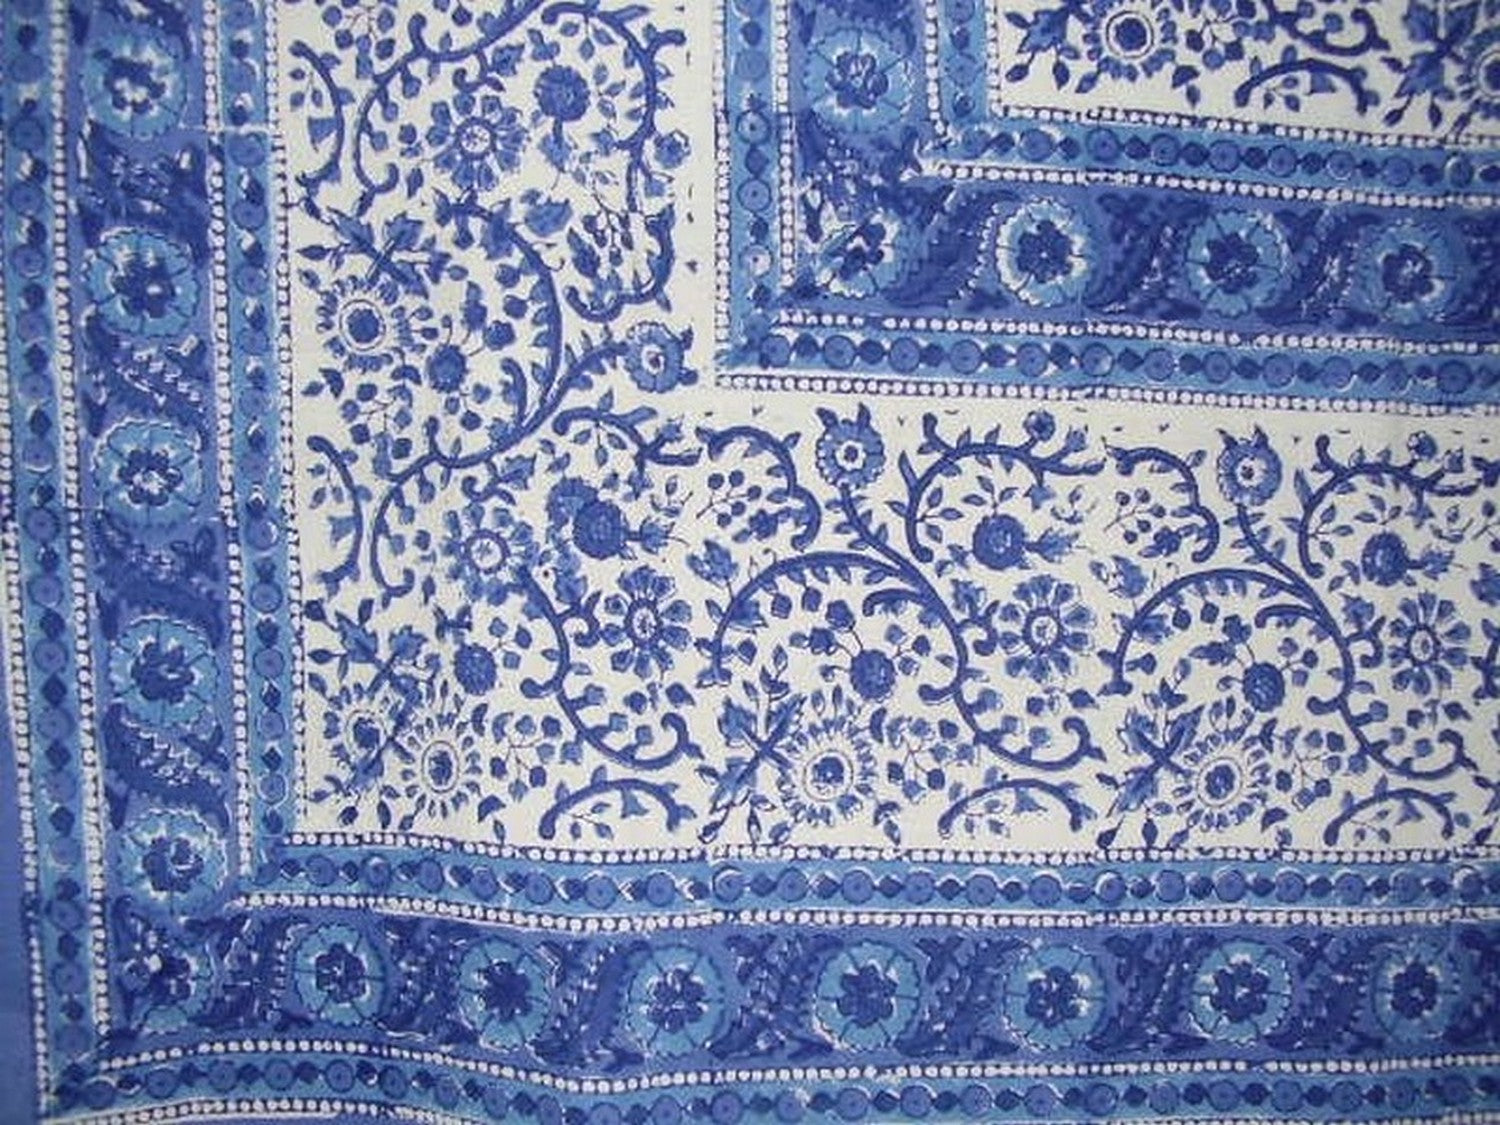 拉贾斯坦邦版画棉质桌布 90 英寸 x 60 英寸蓝色